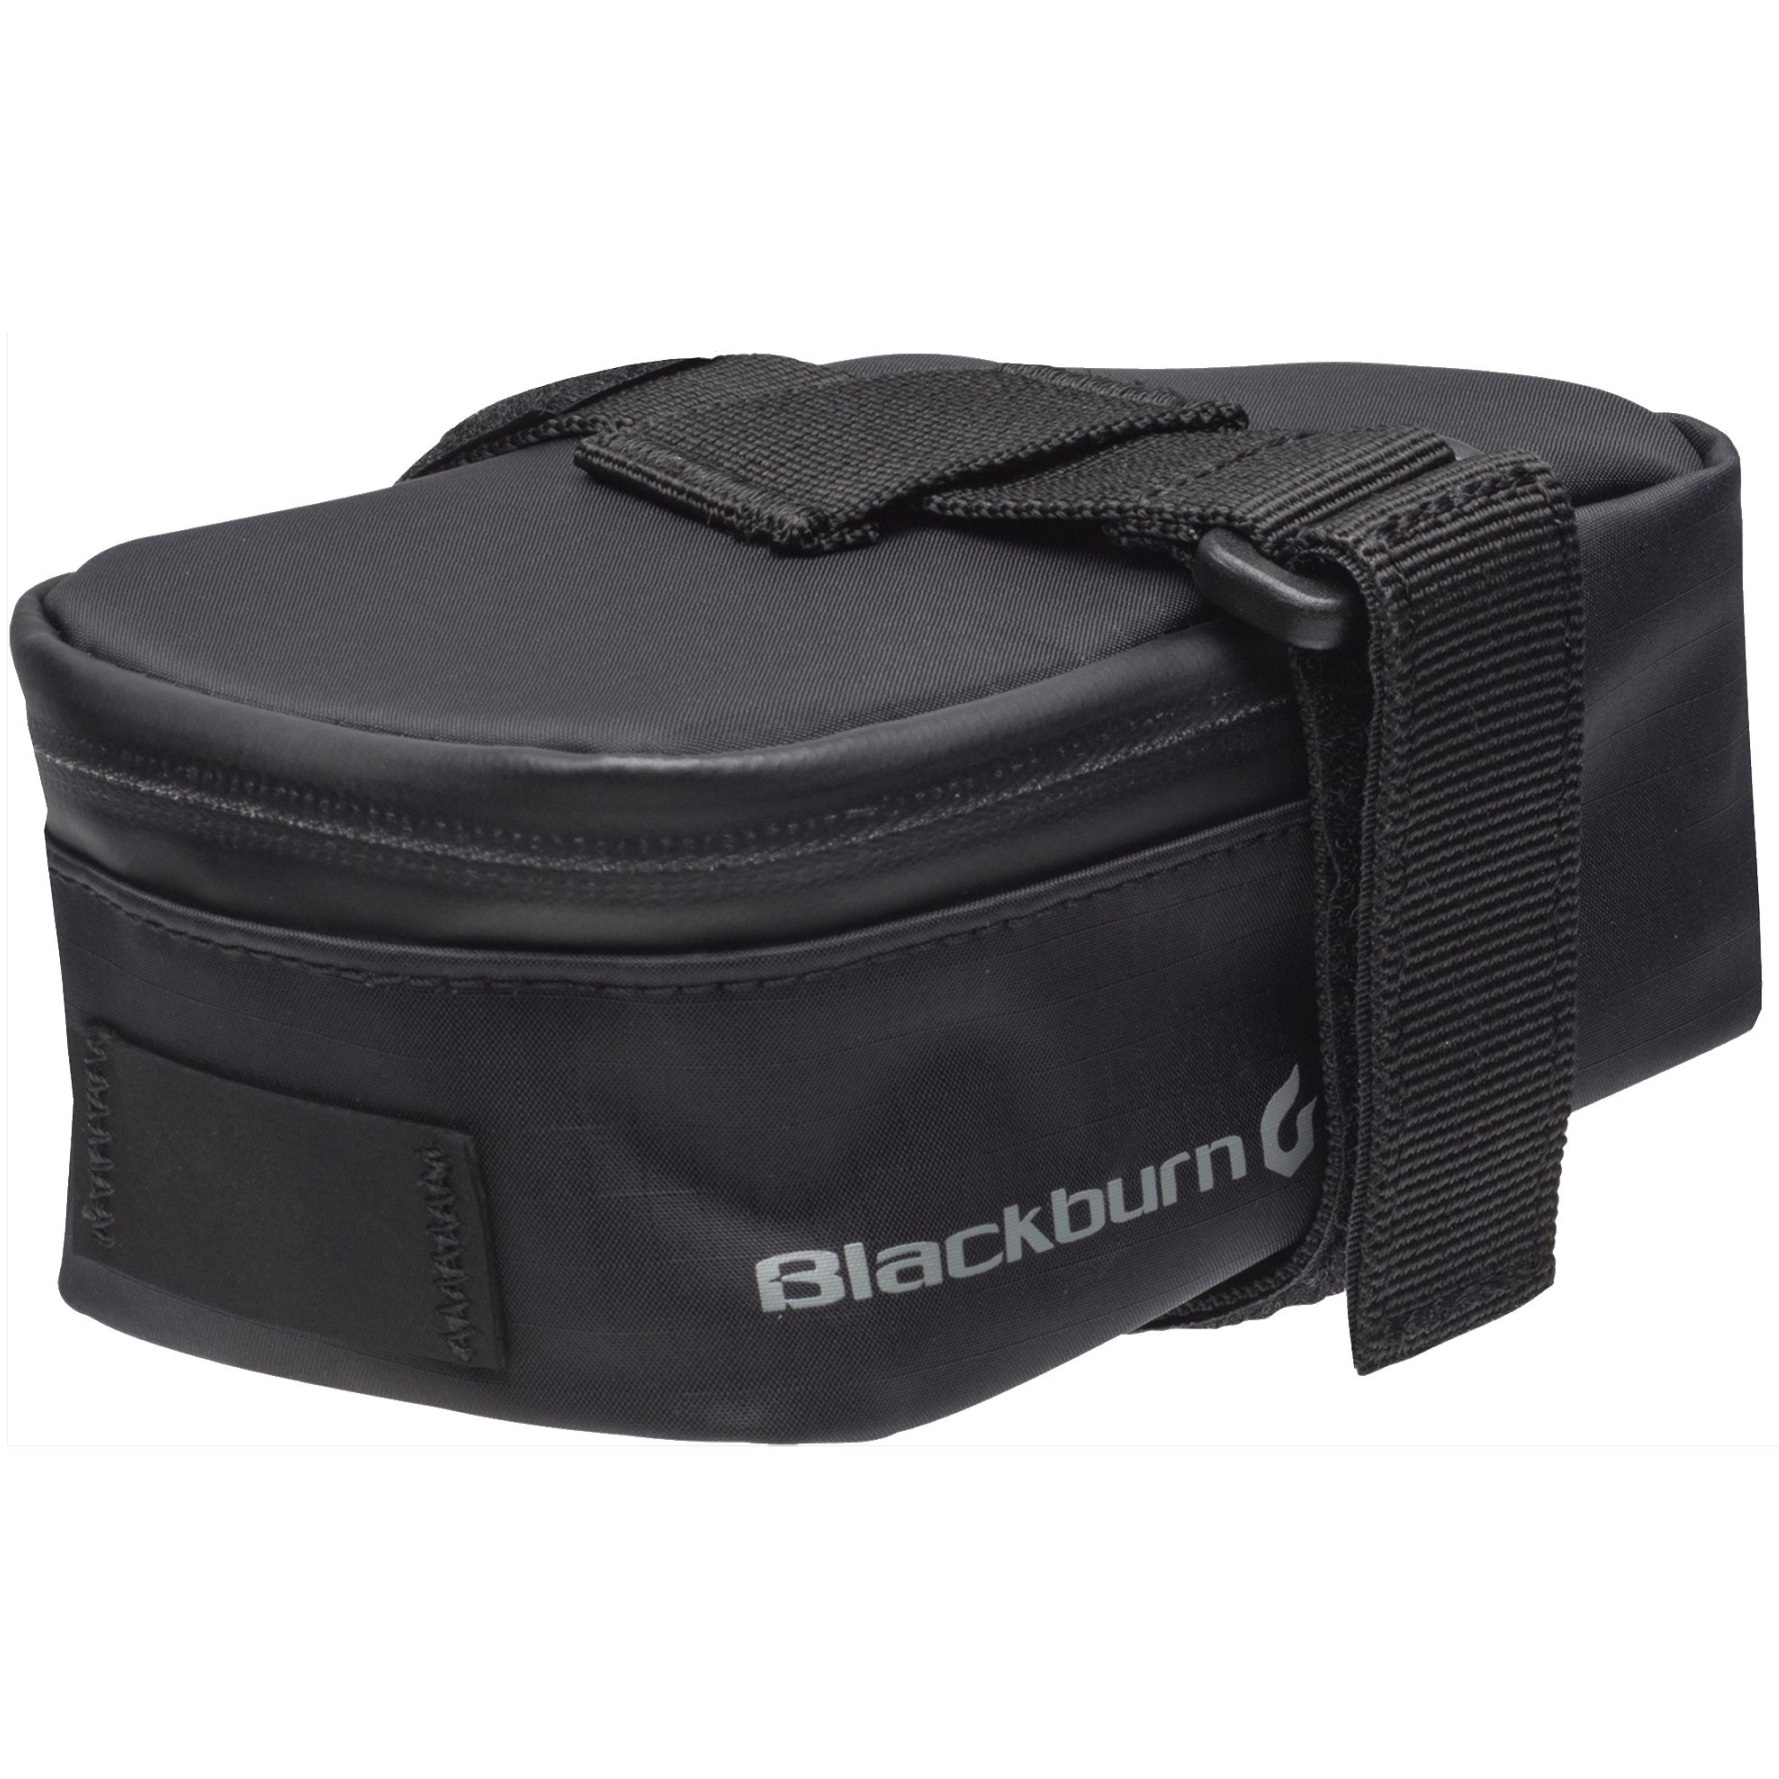 Produktbild von Blackburn Grid MTB Seat Bag Satteltasche - black reflective